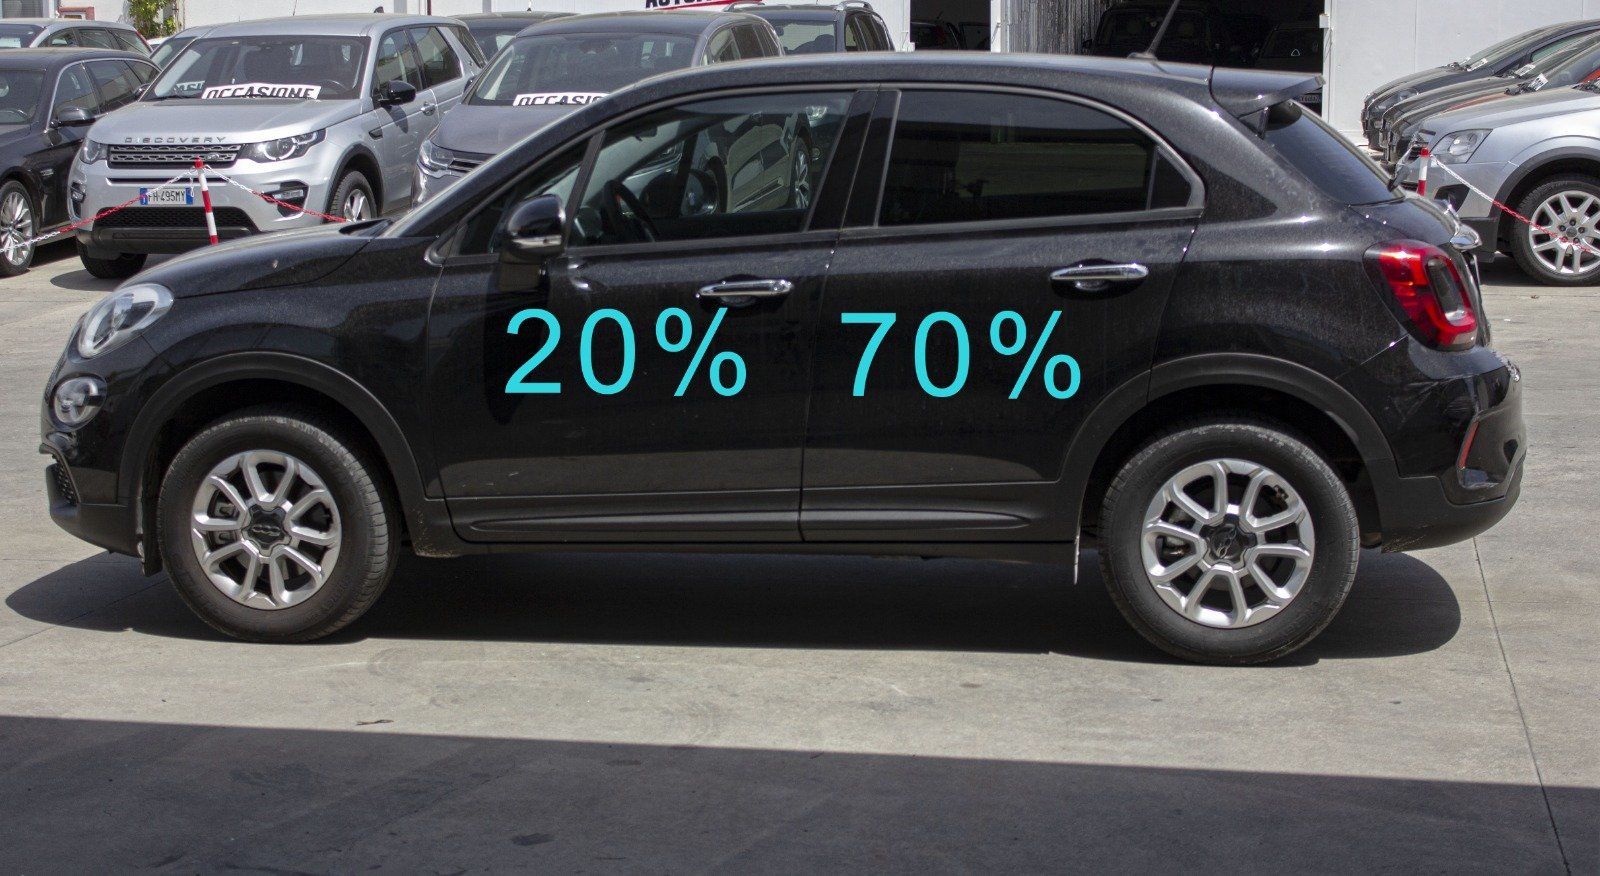 Gradazione  tonalità oscuramento vetri auto con pellicole oscuranti al 70% Fiat 500X